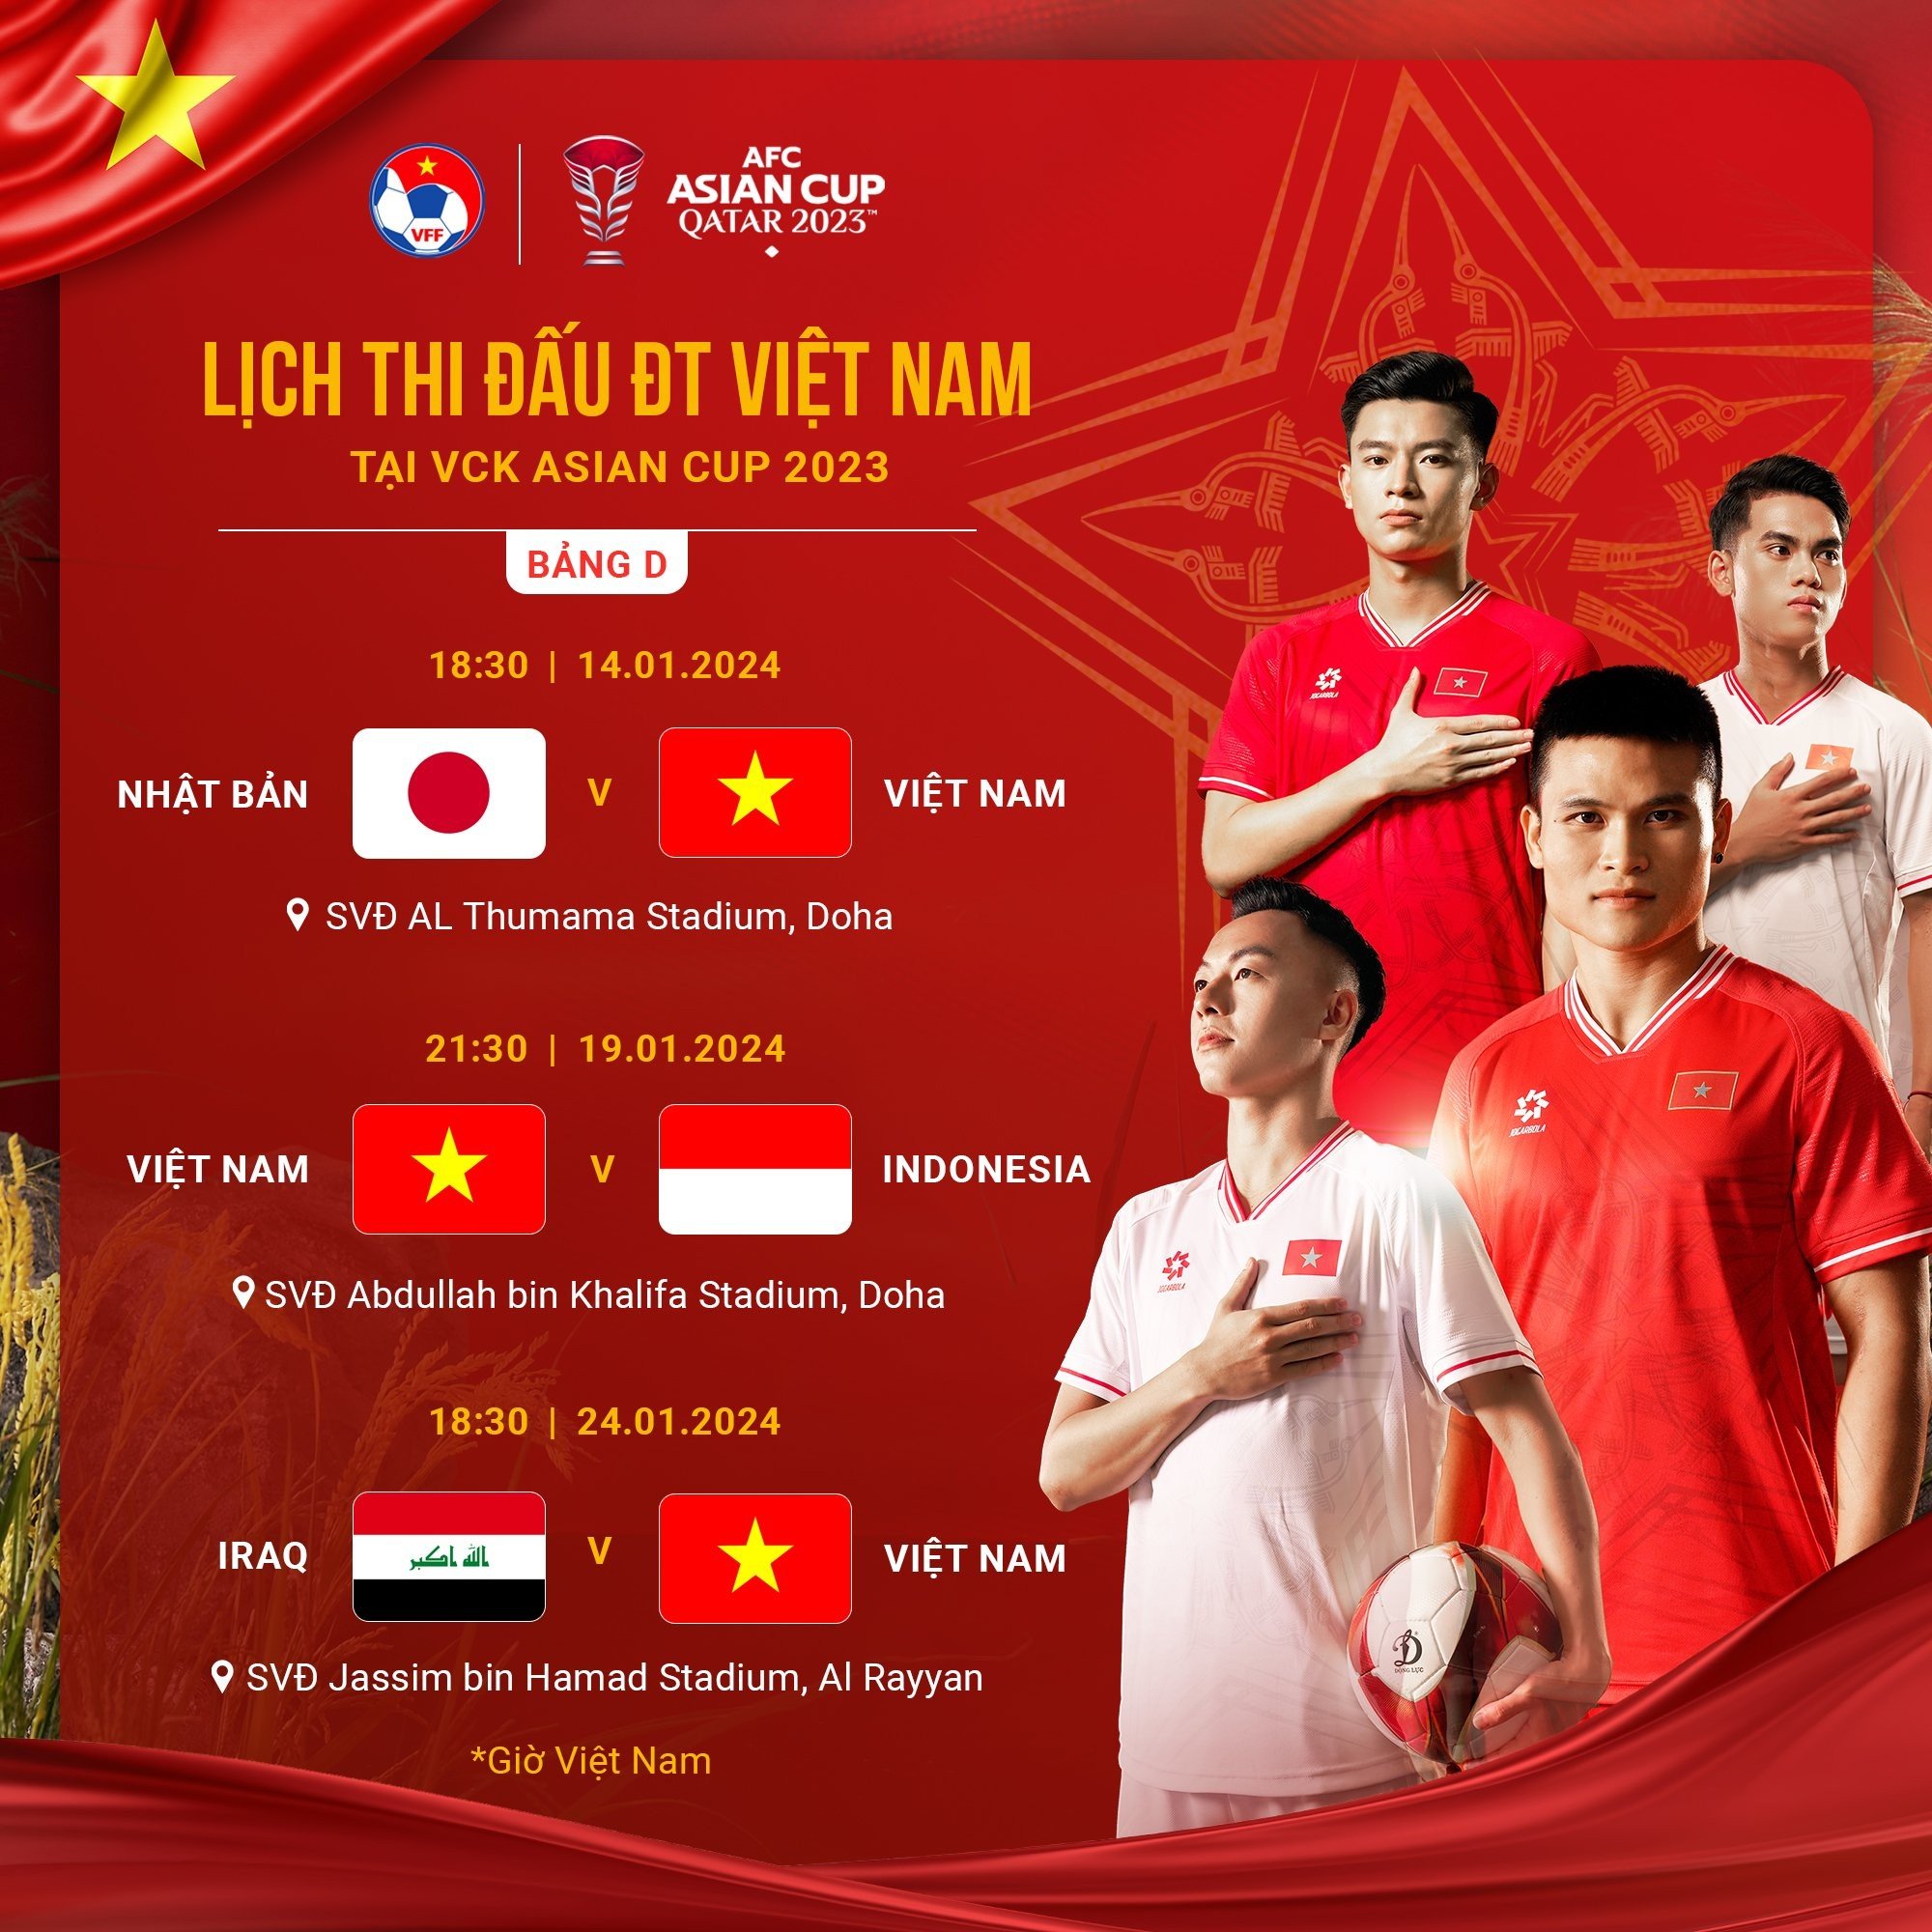 Lịch thi đấu Asian Cup 2023 của tuyển Việt Nam. Ảnh: Internet